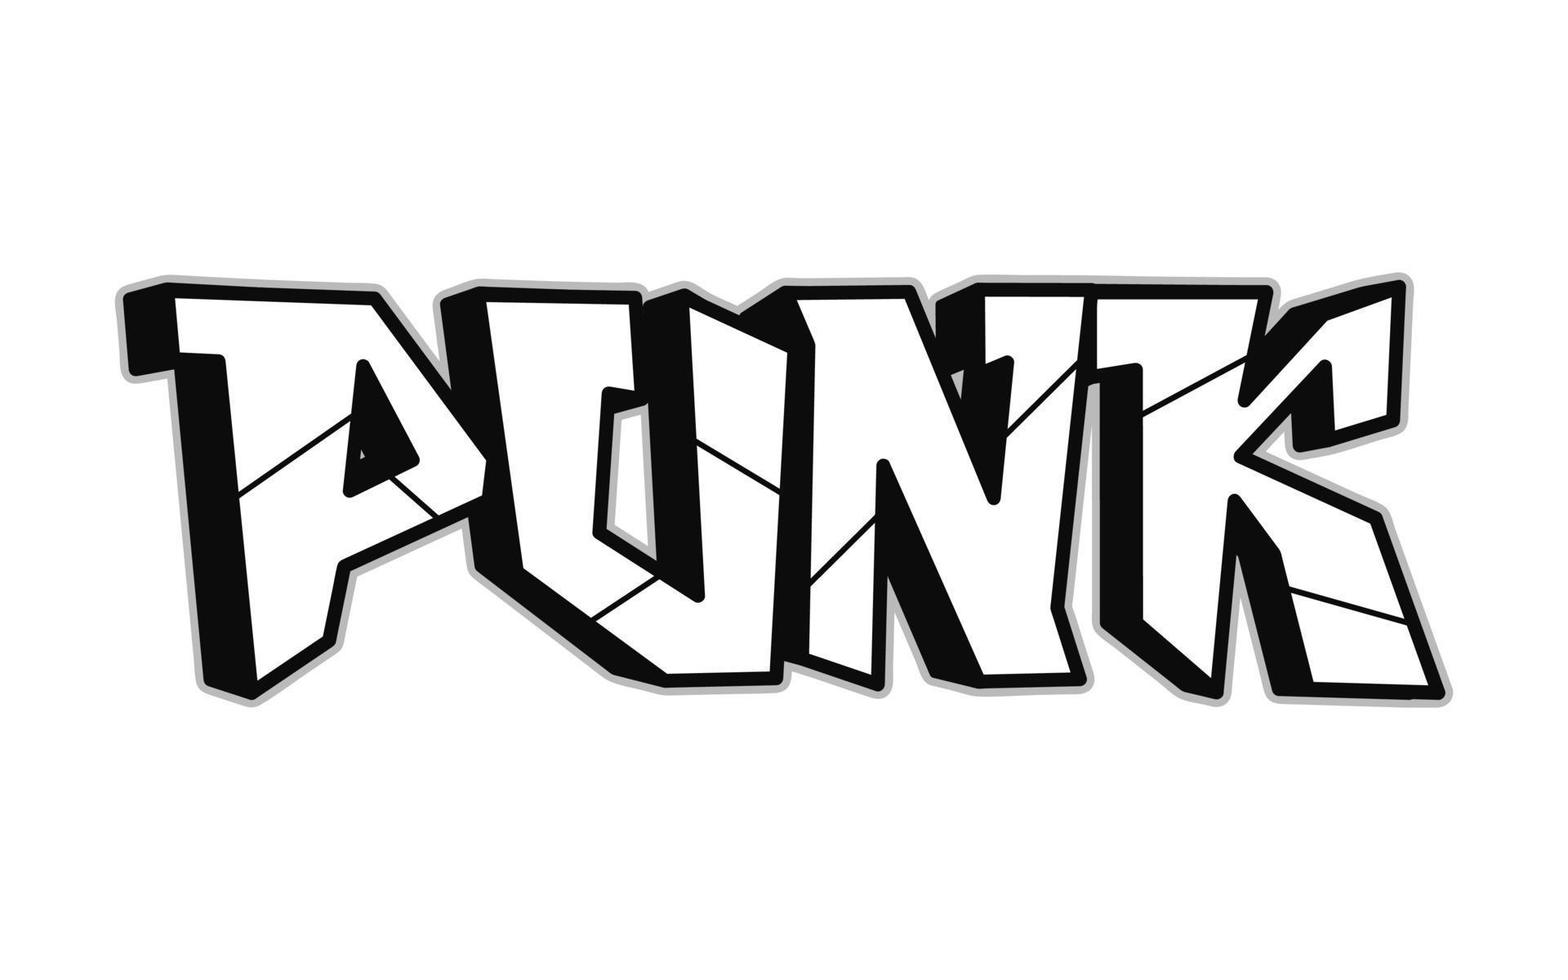 Punk Wort trippy psychedelisch Graffiti Stil letters.vector Hand gezeichnet Gekritzel Karikatur Logo Punk Illustration. komisch cool trippy Briefe, Mode, Graffiti Stil drucken zum T-Shirt, Poster Konzept vektor